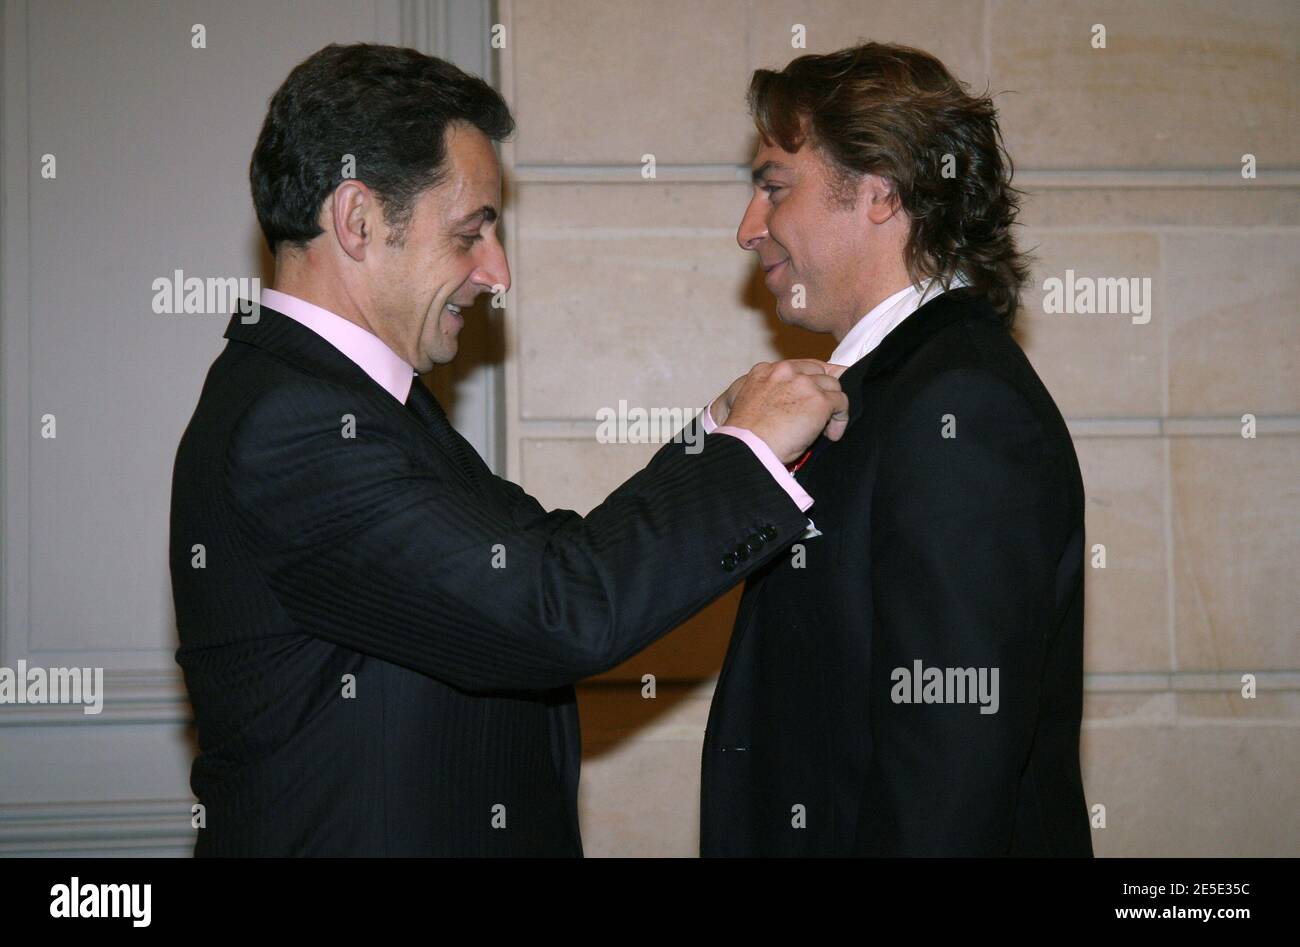 Der französische Präsident Nicolas Sarkozy verleiht dem französischen Tenorsänger Roberto Alagna am 15. Dezember 2008 im Elysee-Palast in Paris die Medaille des Ritters in der Ehrenlegion, der höchsten Auszeichnung Frankreichs (Chevalier de la Legion d'Honneur). Foto von Jean-Marc Haedrich/Pool/ABACAPRESS.COM Stockfoto